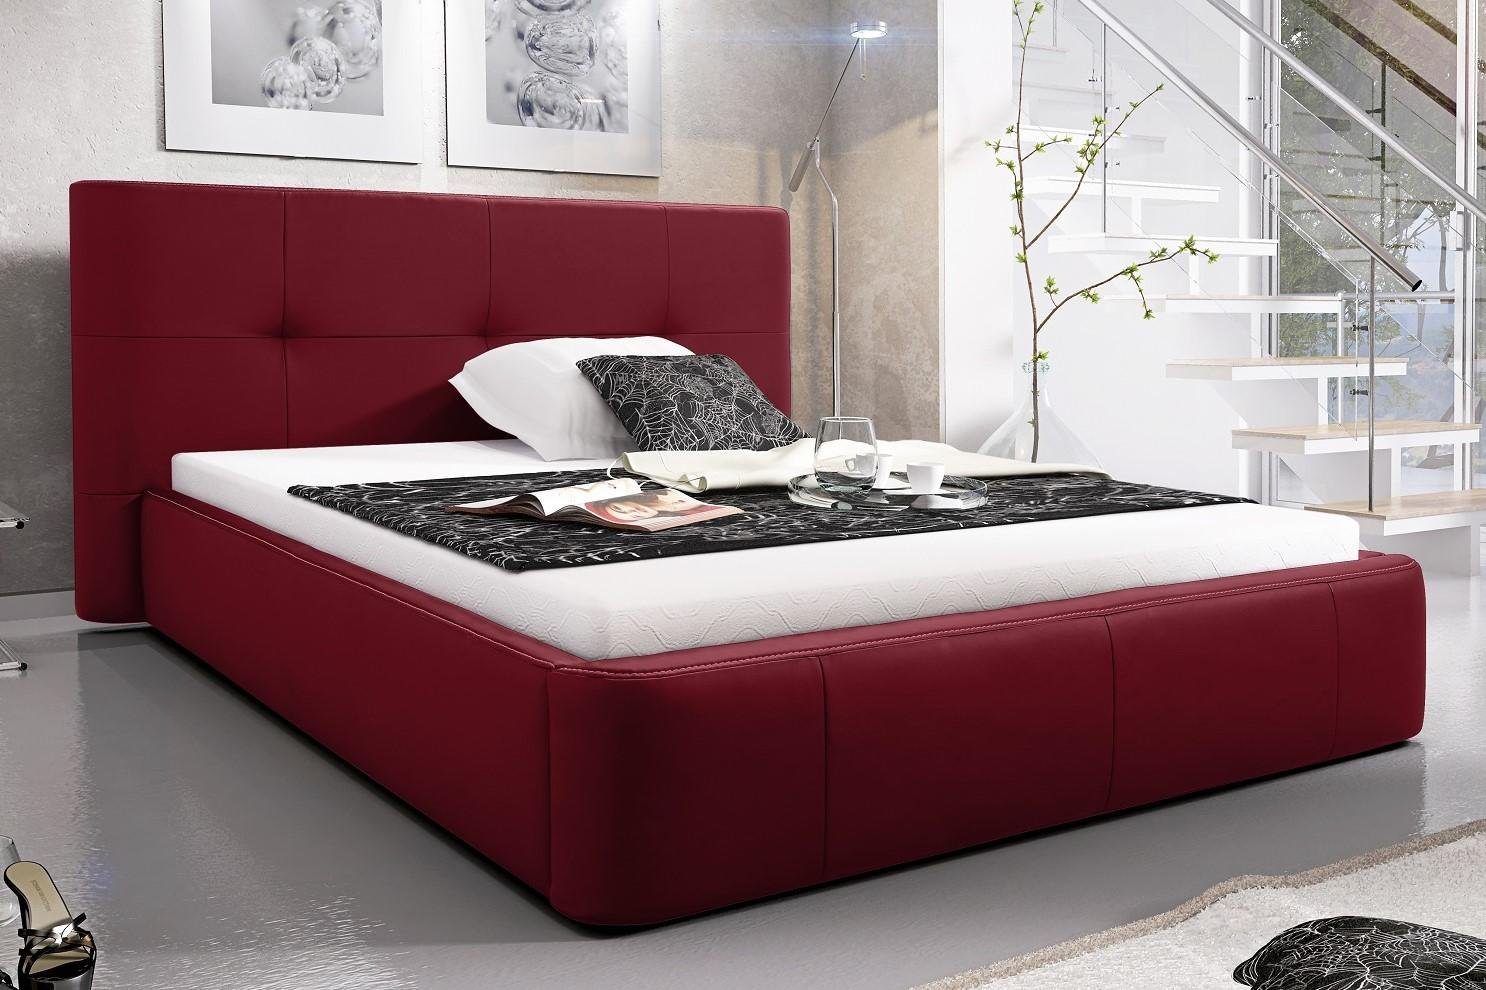 JVmoebel Bett, Luxus Bett Hotel Schlaf Betten Leder Polster Doppel Rot Zimmer Design